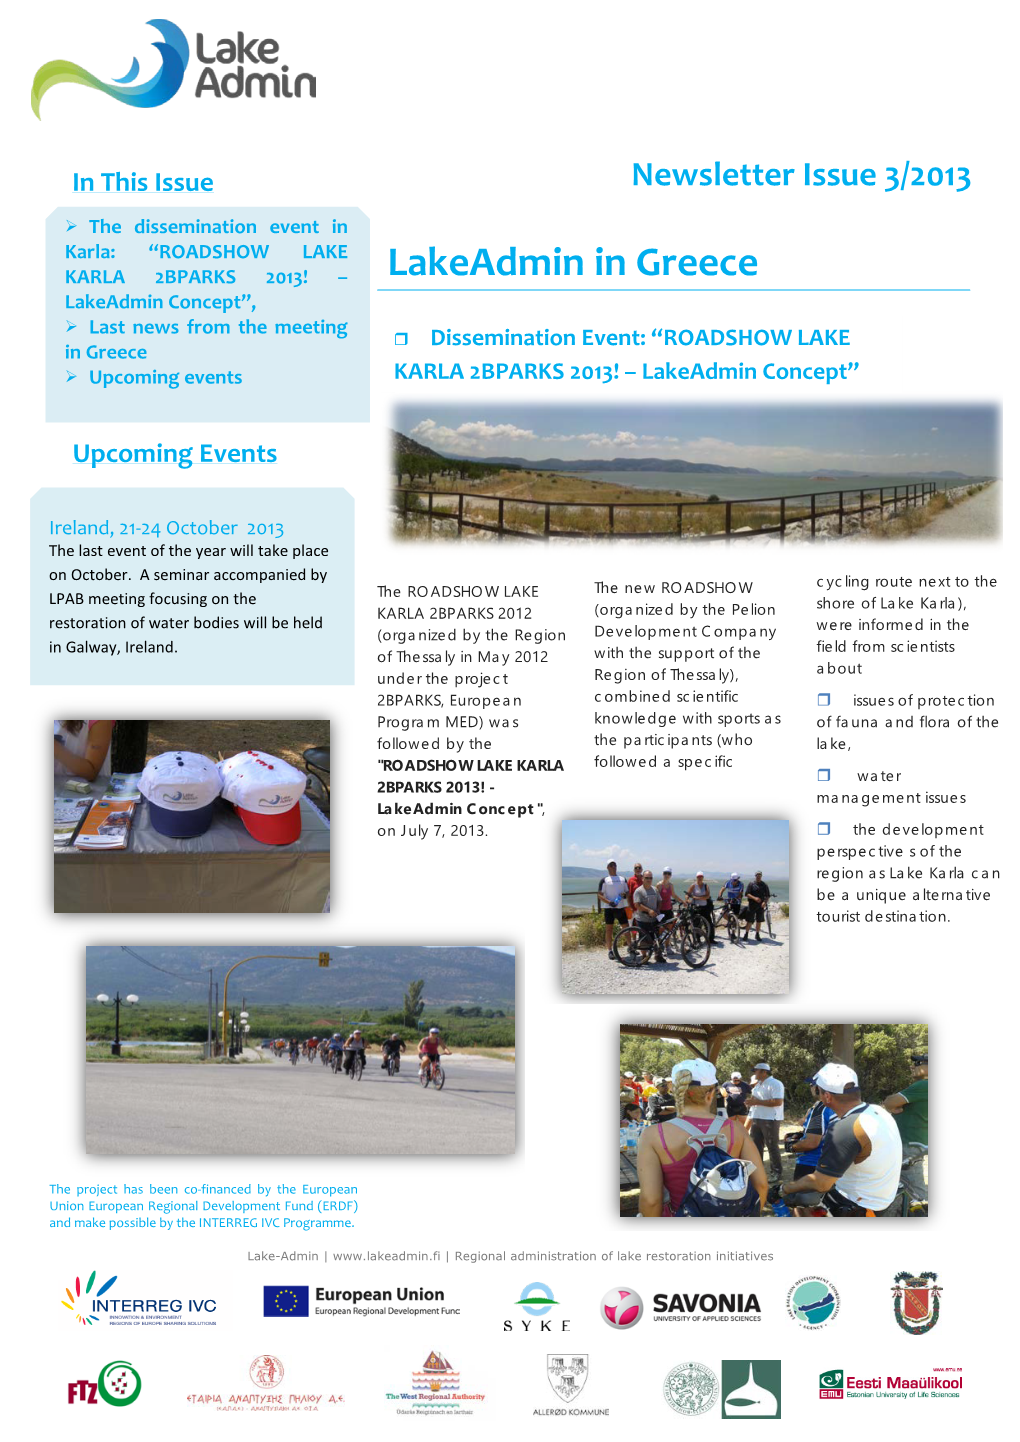 Lakeadmin in Greece